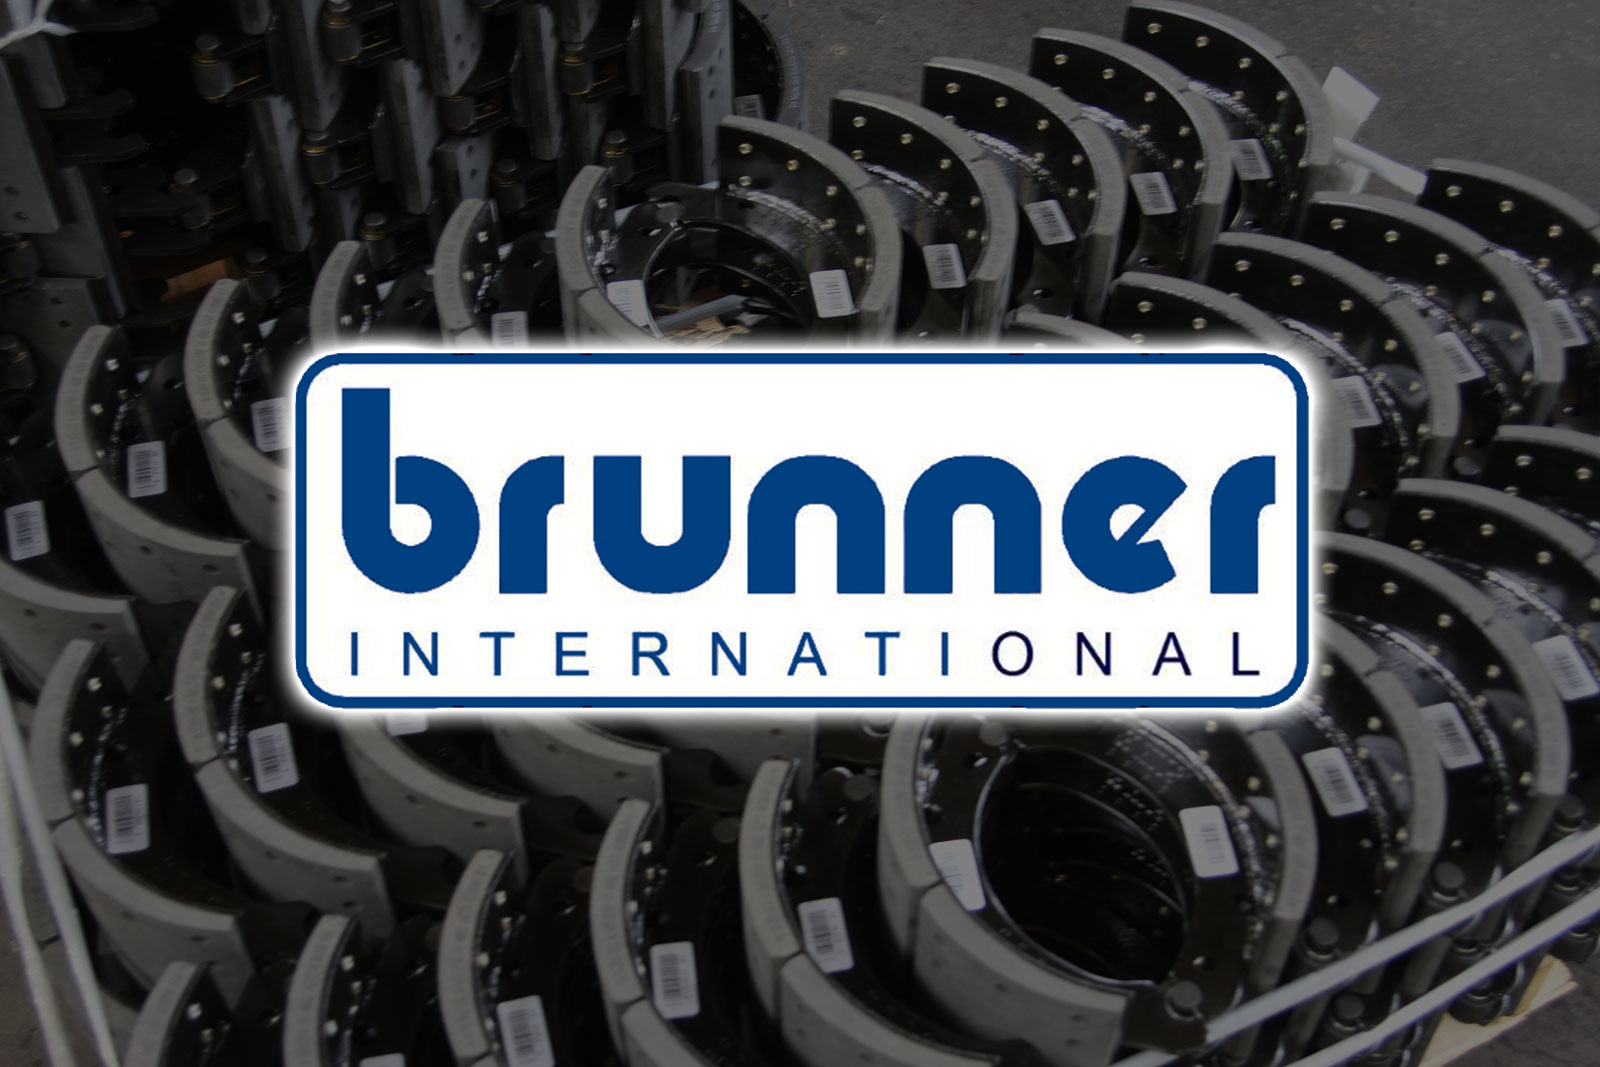 Brunner International Inc